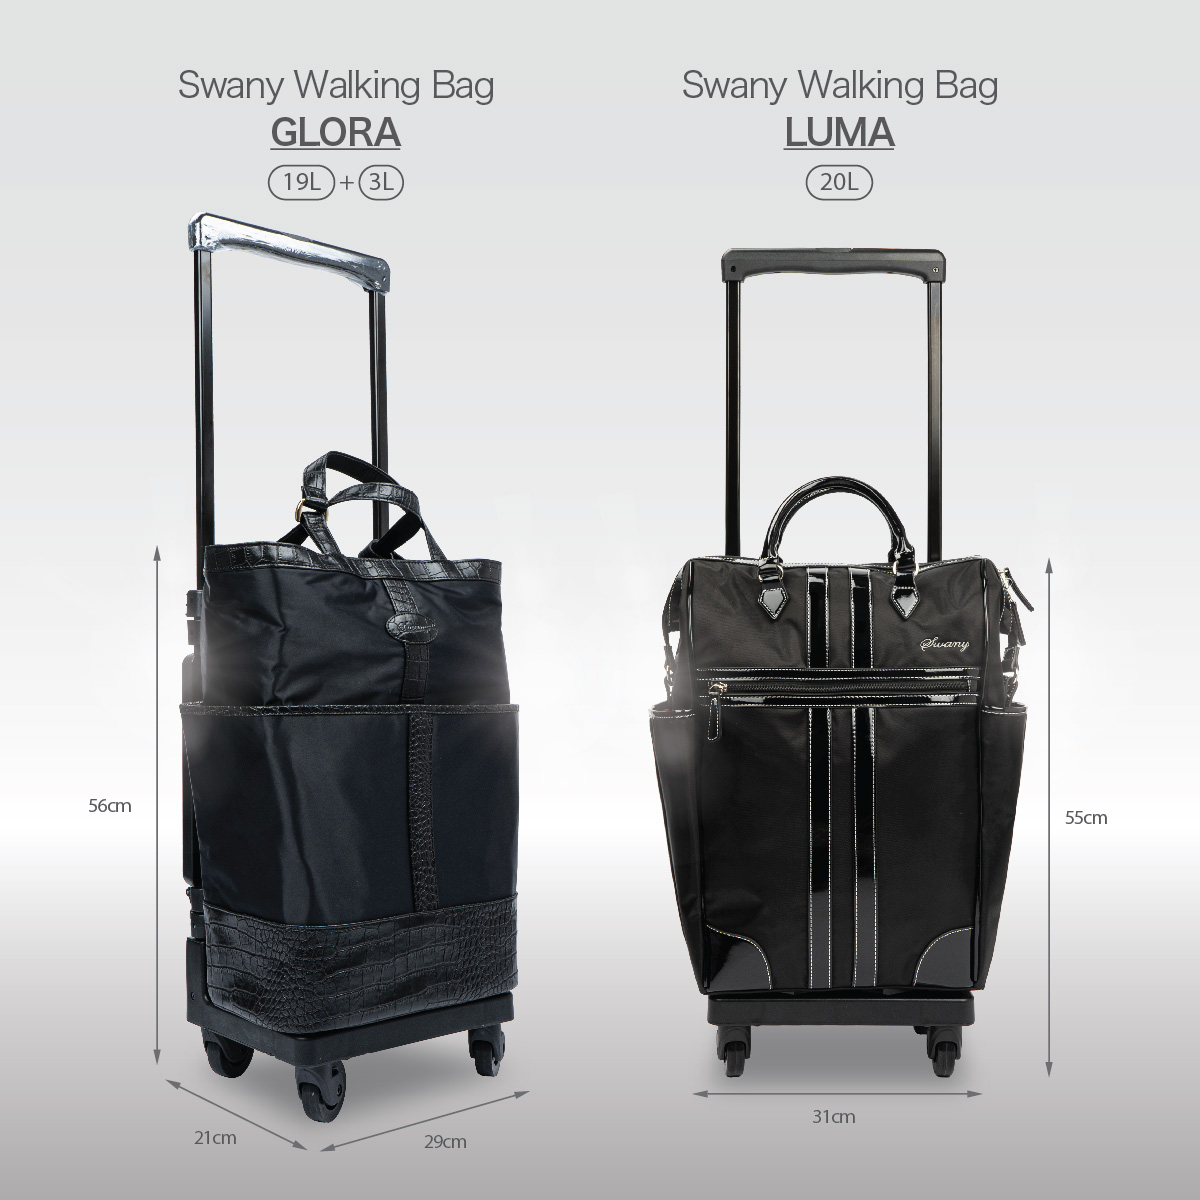 所有Walking Bag尺寸符合航空公司手提行李規定，可以攜帶上機，差旅首選。